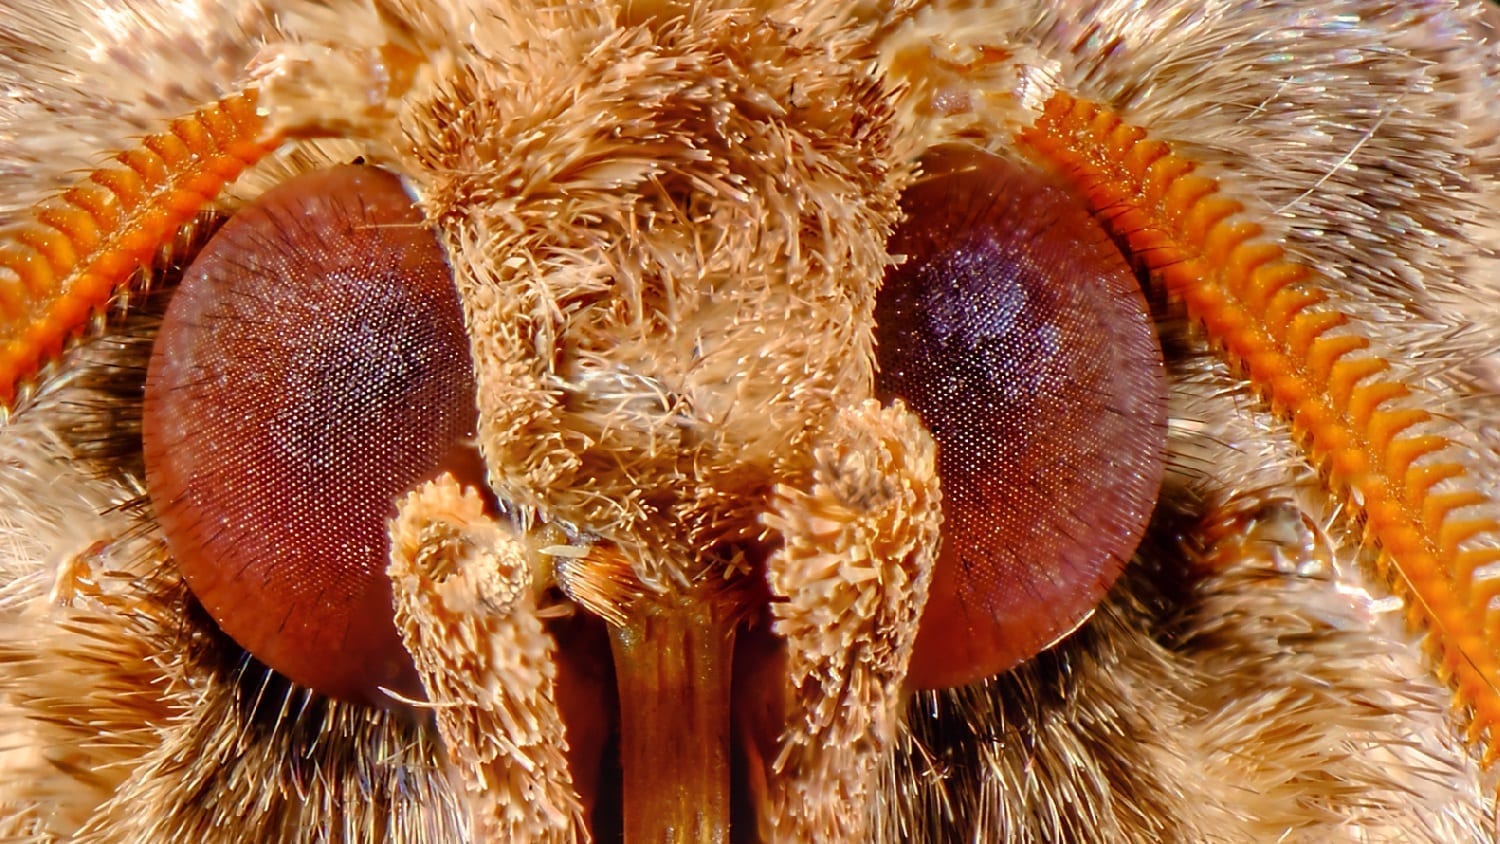 Metarranthis Moth head with eyes: ID 130652276 © Ezumeimages | Dreamstime.com